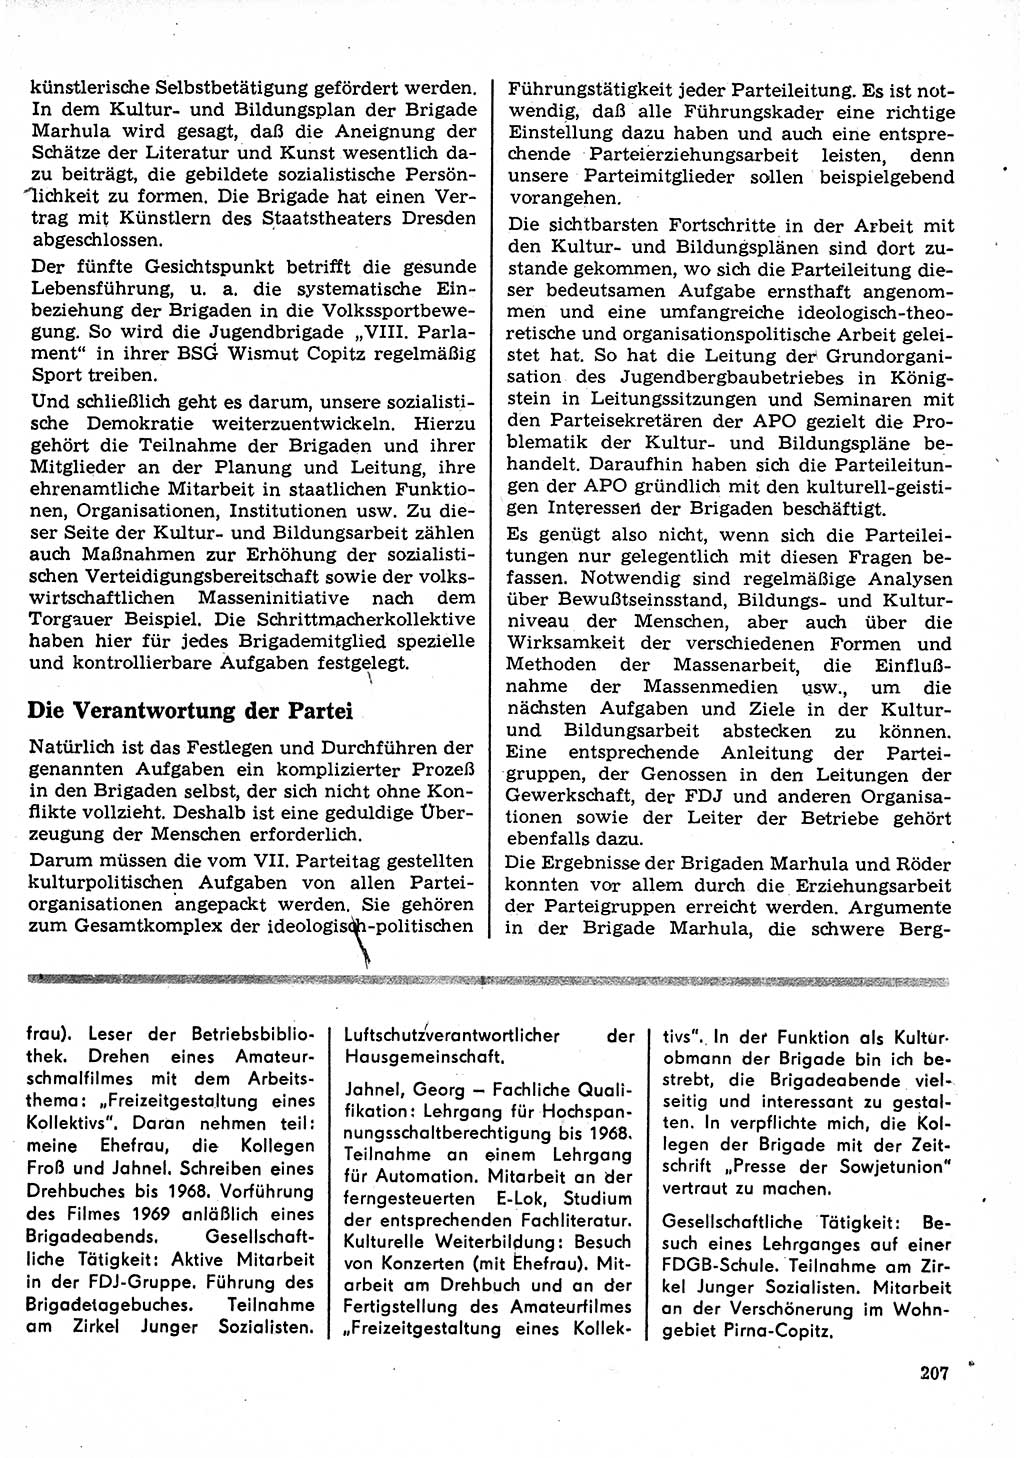 Neuer Weg (NW), Organ des Zentralkomitees (ZK) der SED (Sozialistische Einheitspartei Deutschlands) für Fragen des Parteilebens, 23. Jahrgang [Deutsche Demokratische Republik (DDR)] 1968, Seite 207 (NW ZK SED DDR 1968, S. 207)